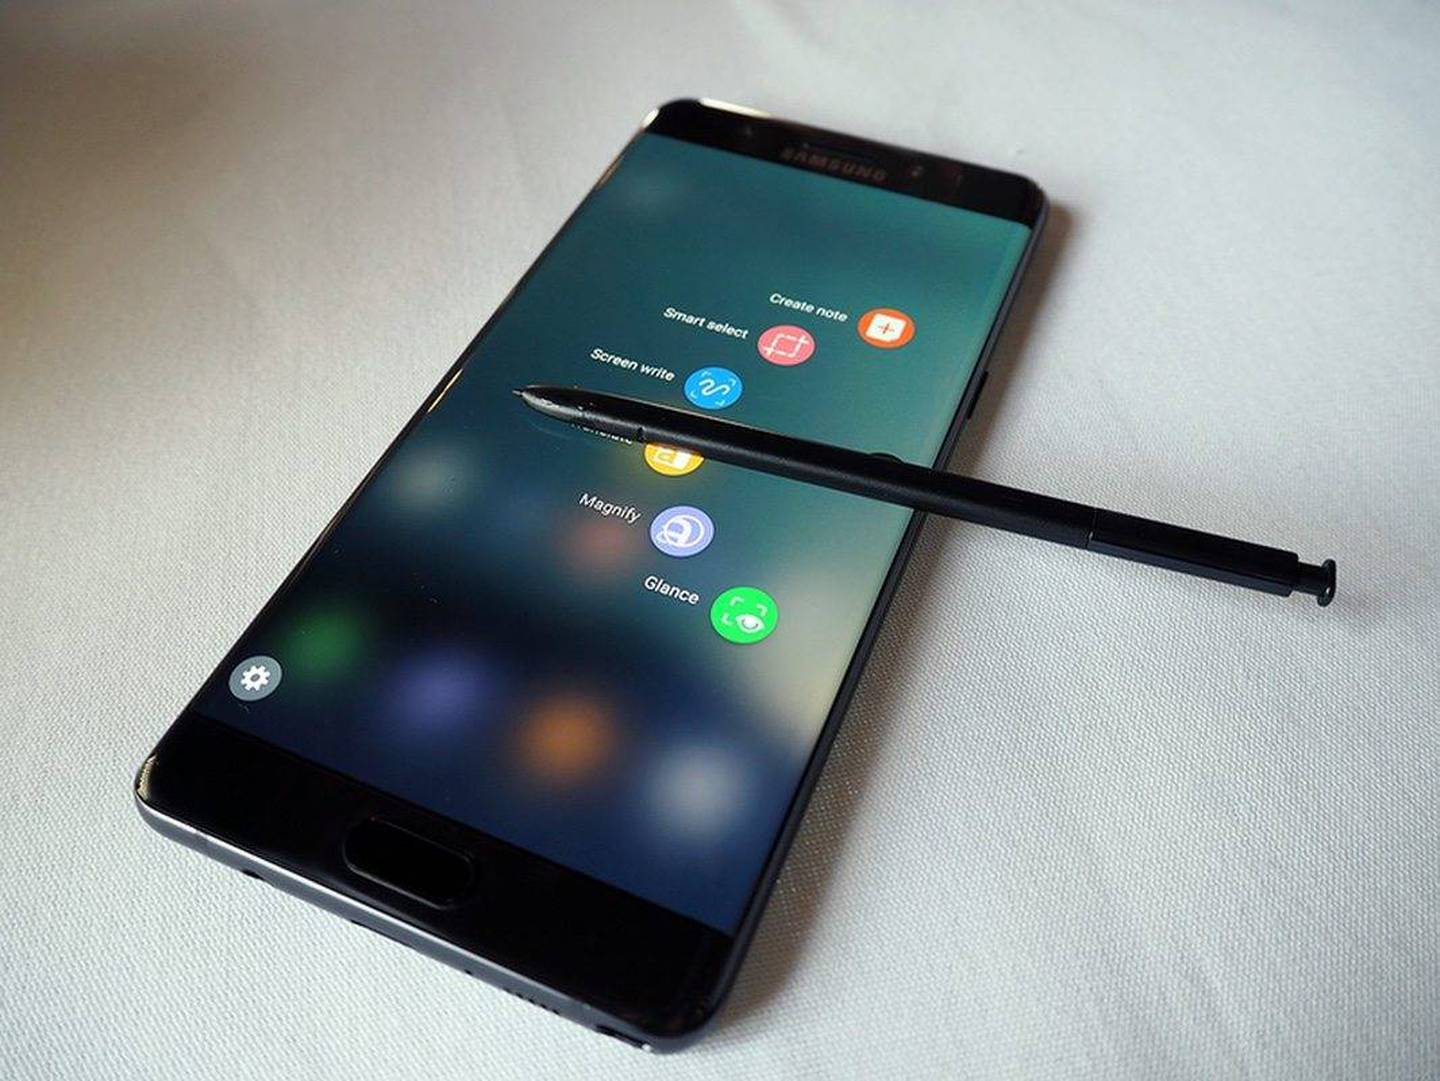 Samsung SDI responsable de las baterías defectuosas del Galaxy Note 7